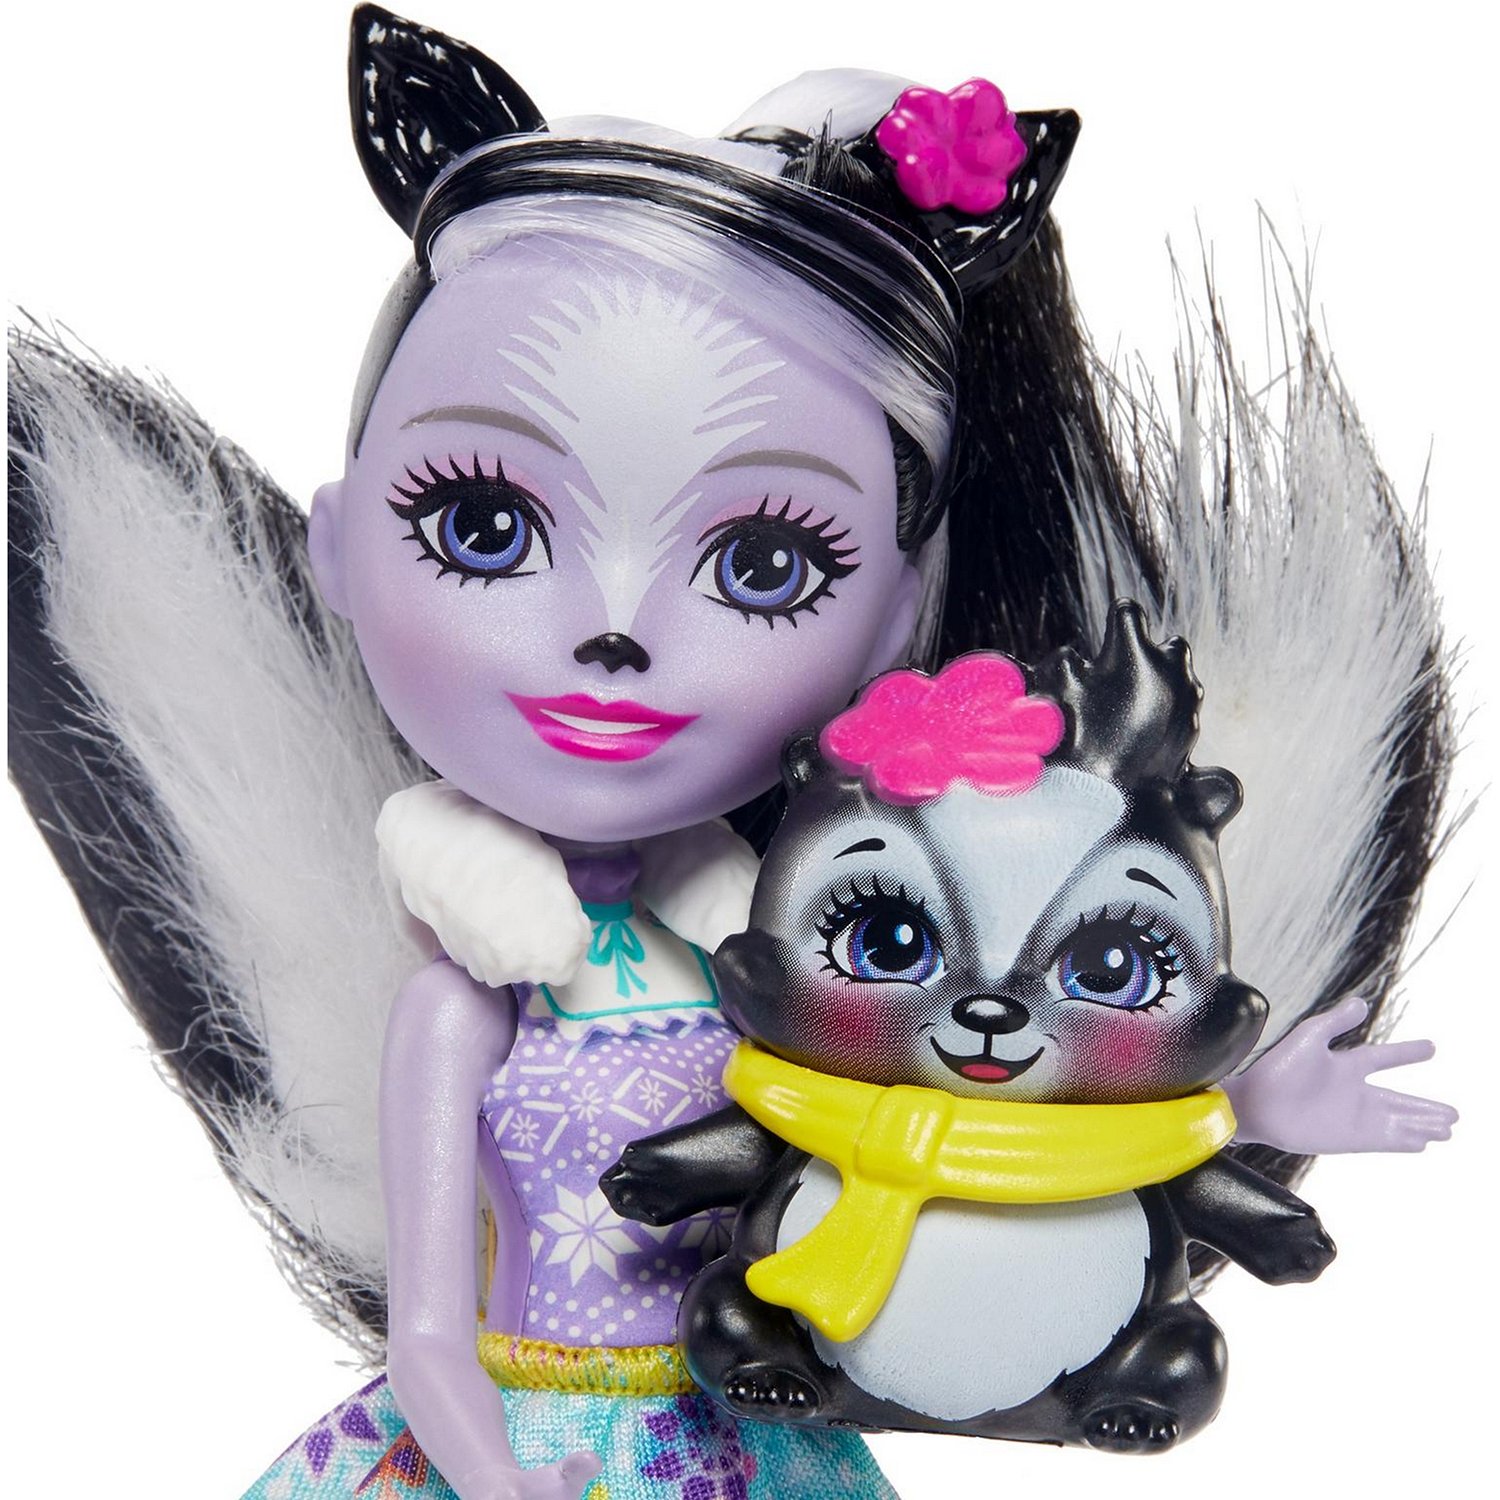 Набор игровой Enchantimals кукла Сэйдж Скунси и Кейпер с аксессуарами GJX34